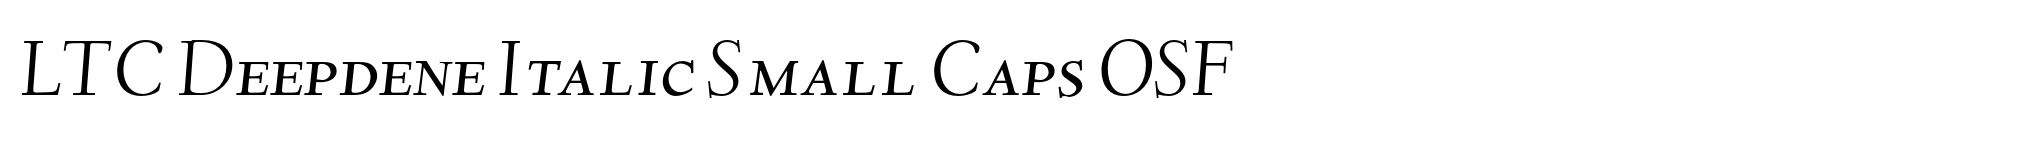 LTC Deepdene Italic Small Caps OSF image